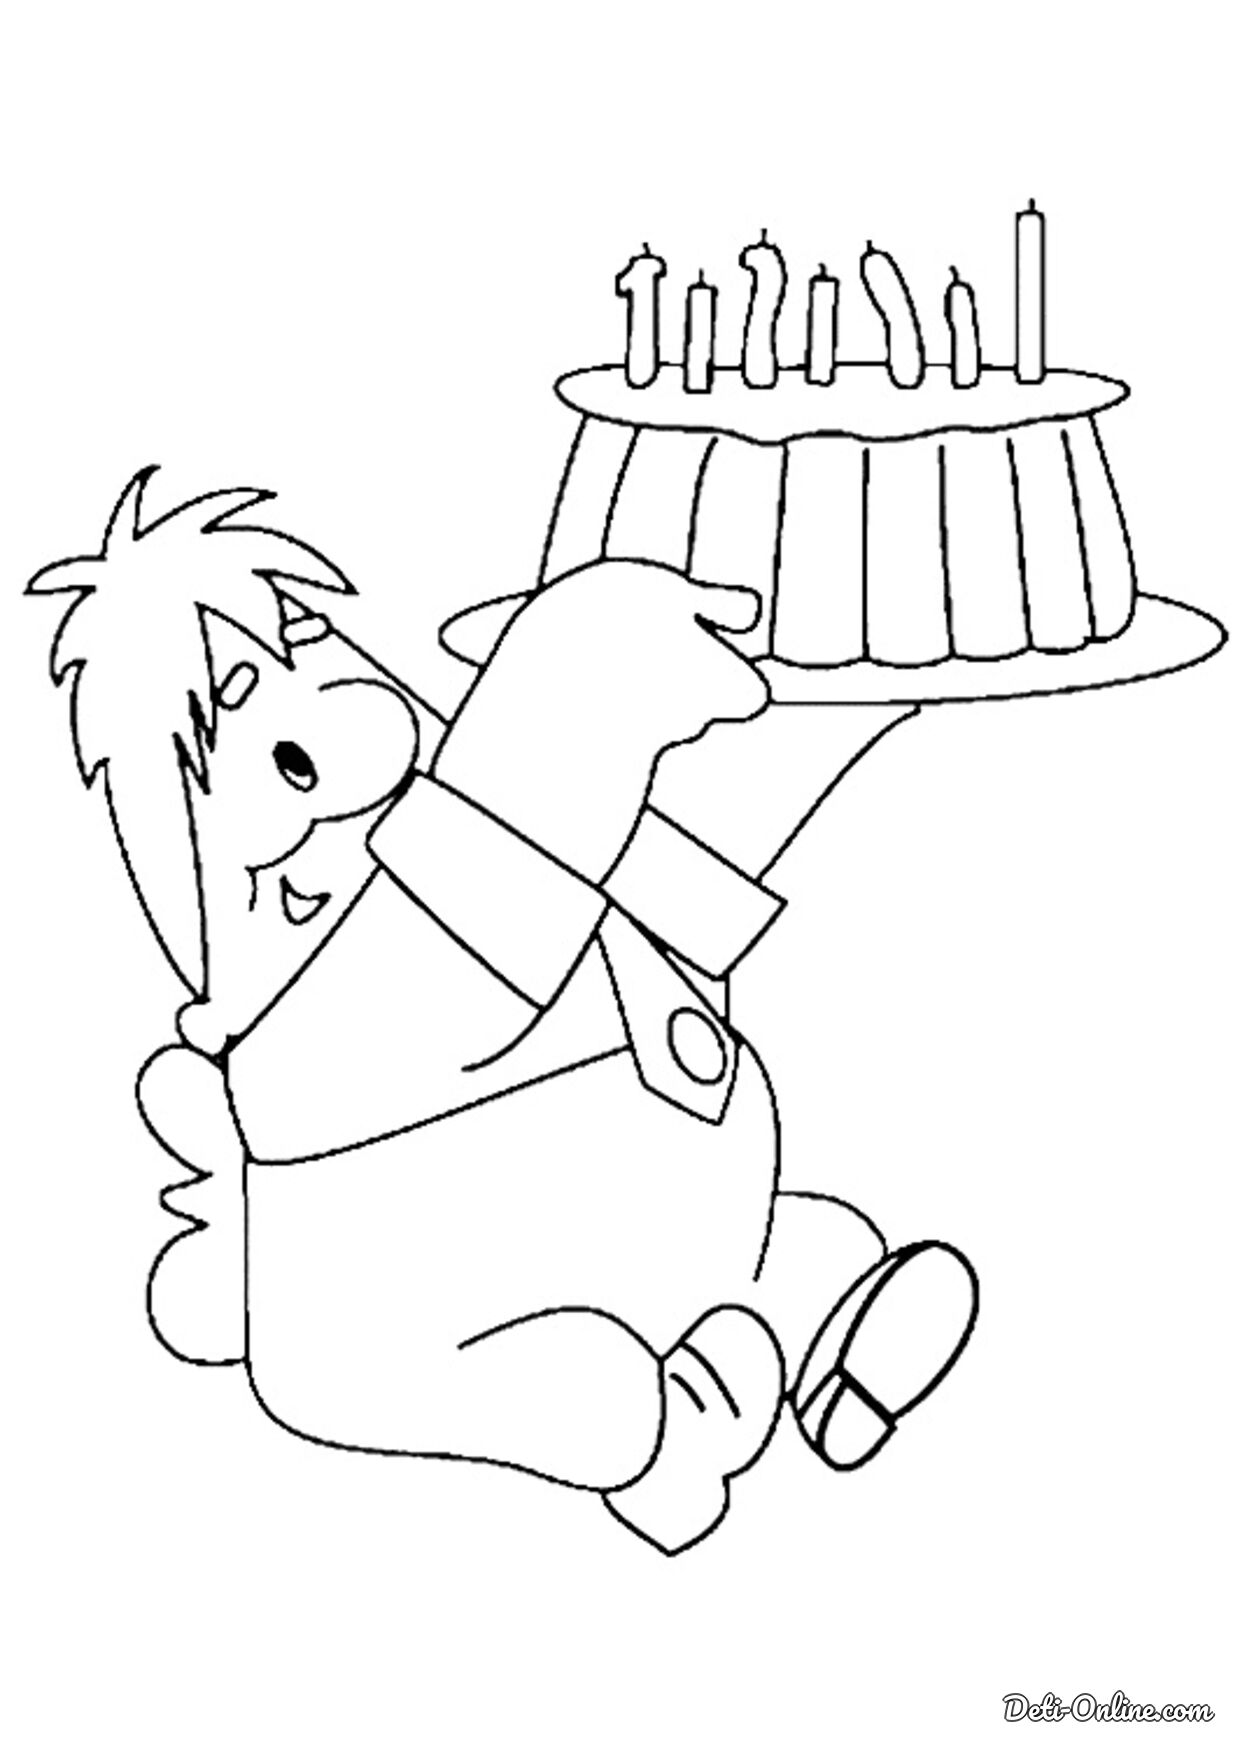 Что можно дедушке нарисовать на день рождения. Раскраска "с днем рождения!". Карлсон раскраска. С днем рождения раскраска для детей. С днём рождения рисунок карандашом.